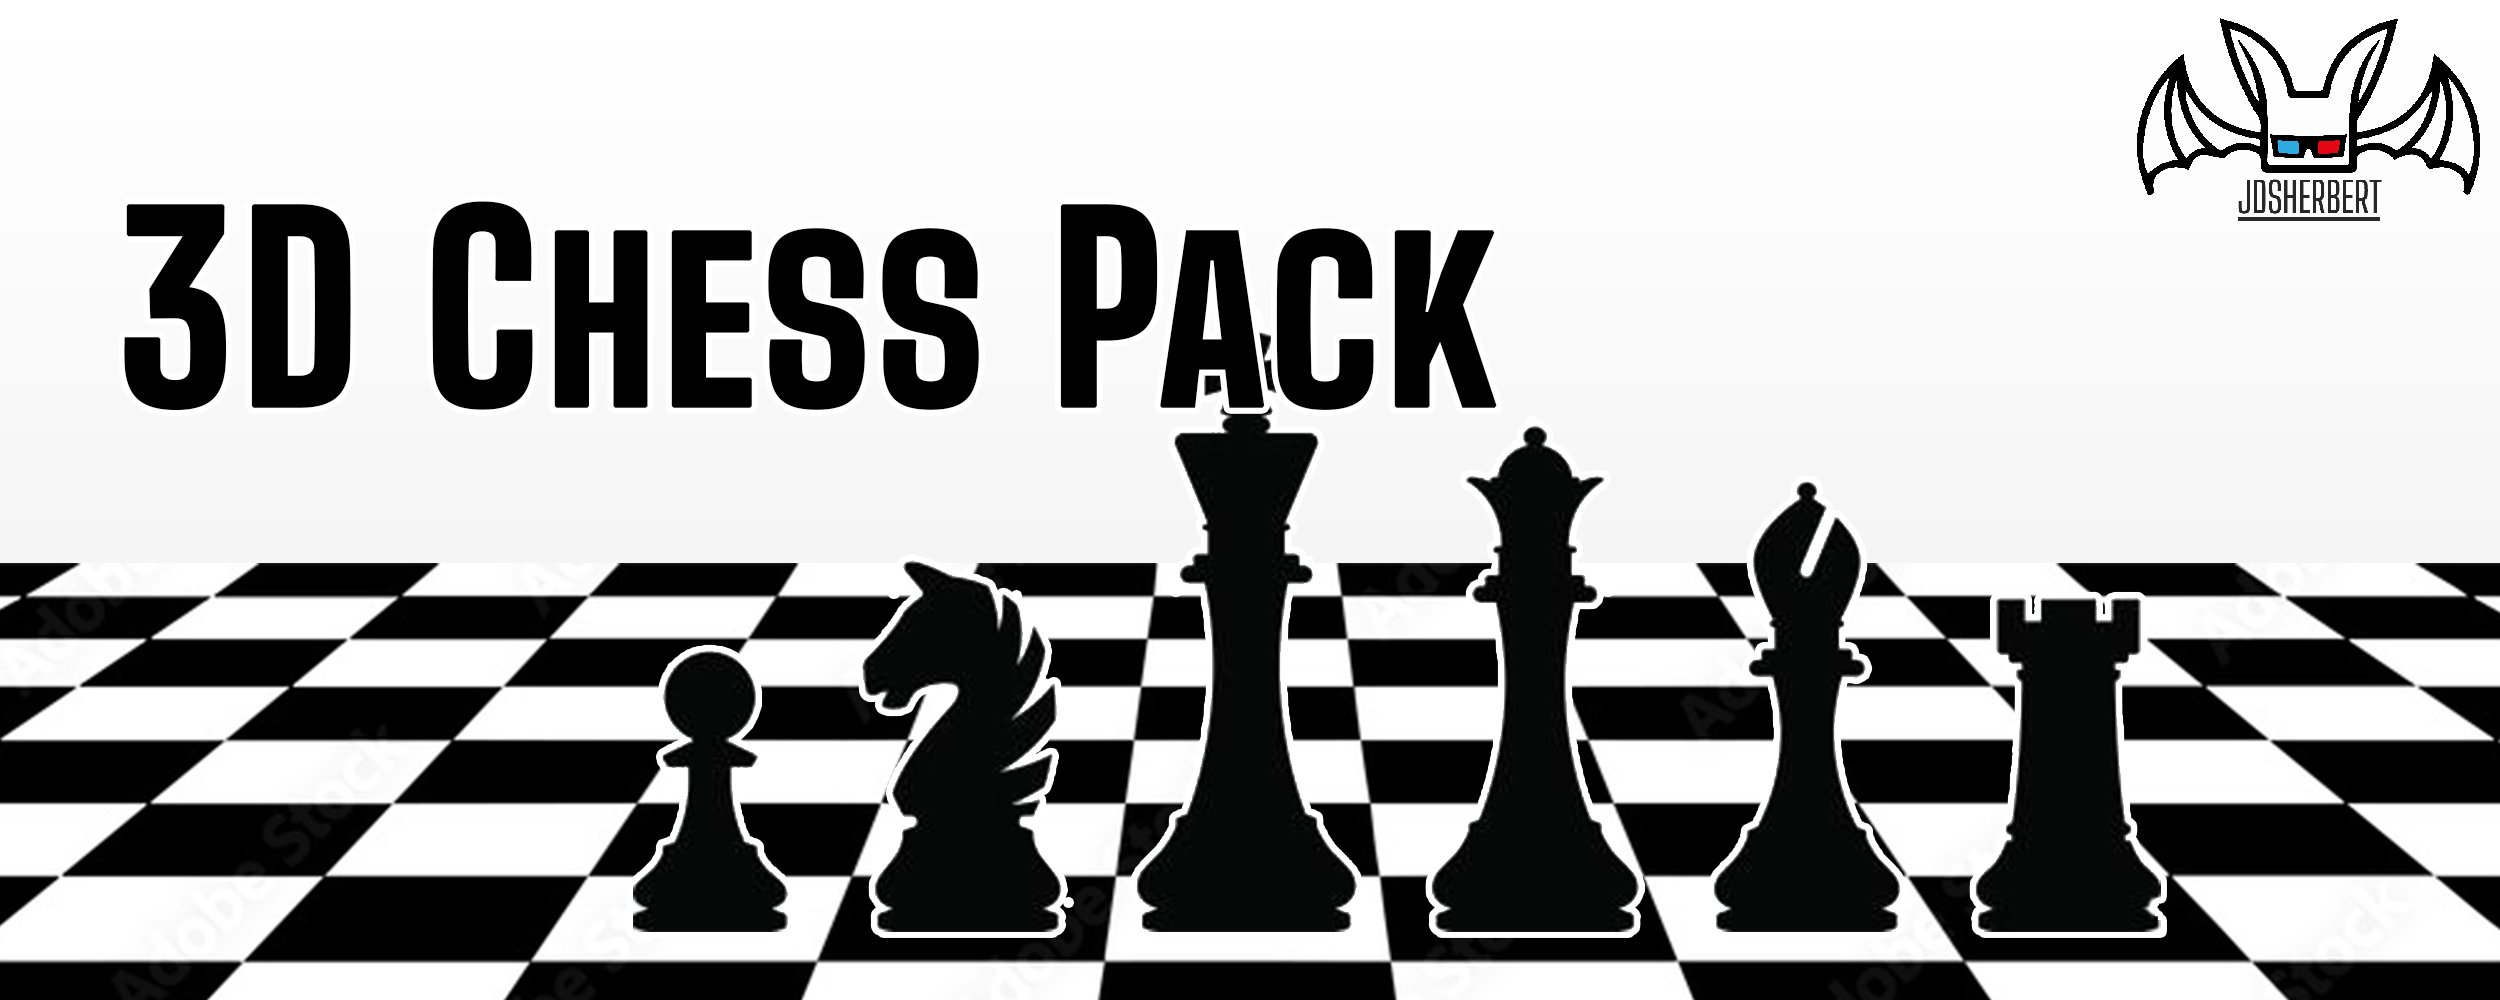 3D Chess Asset Pack